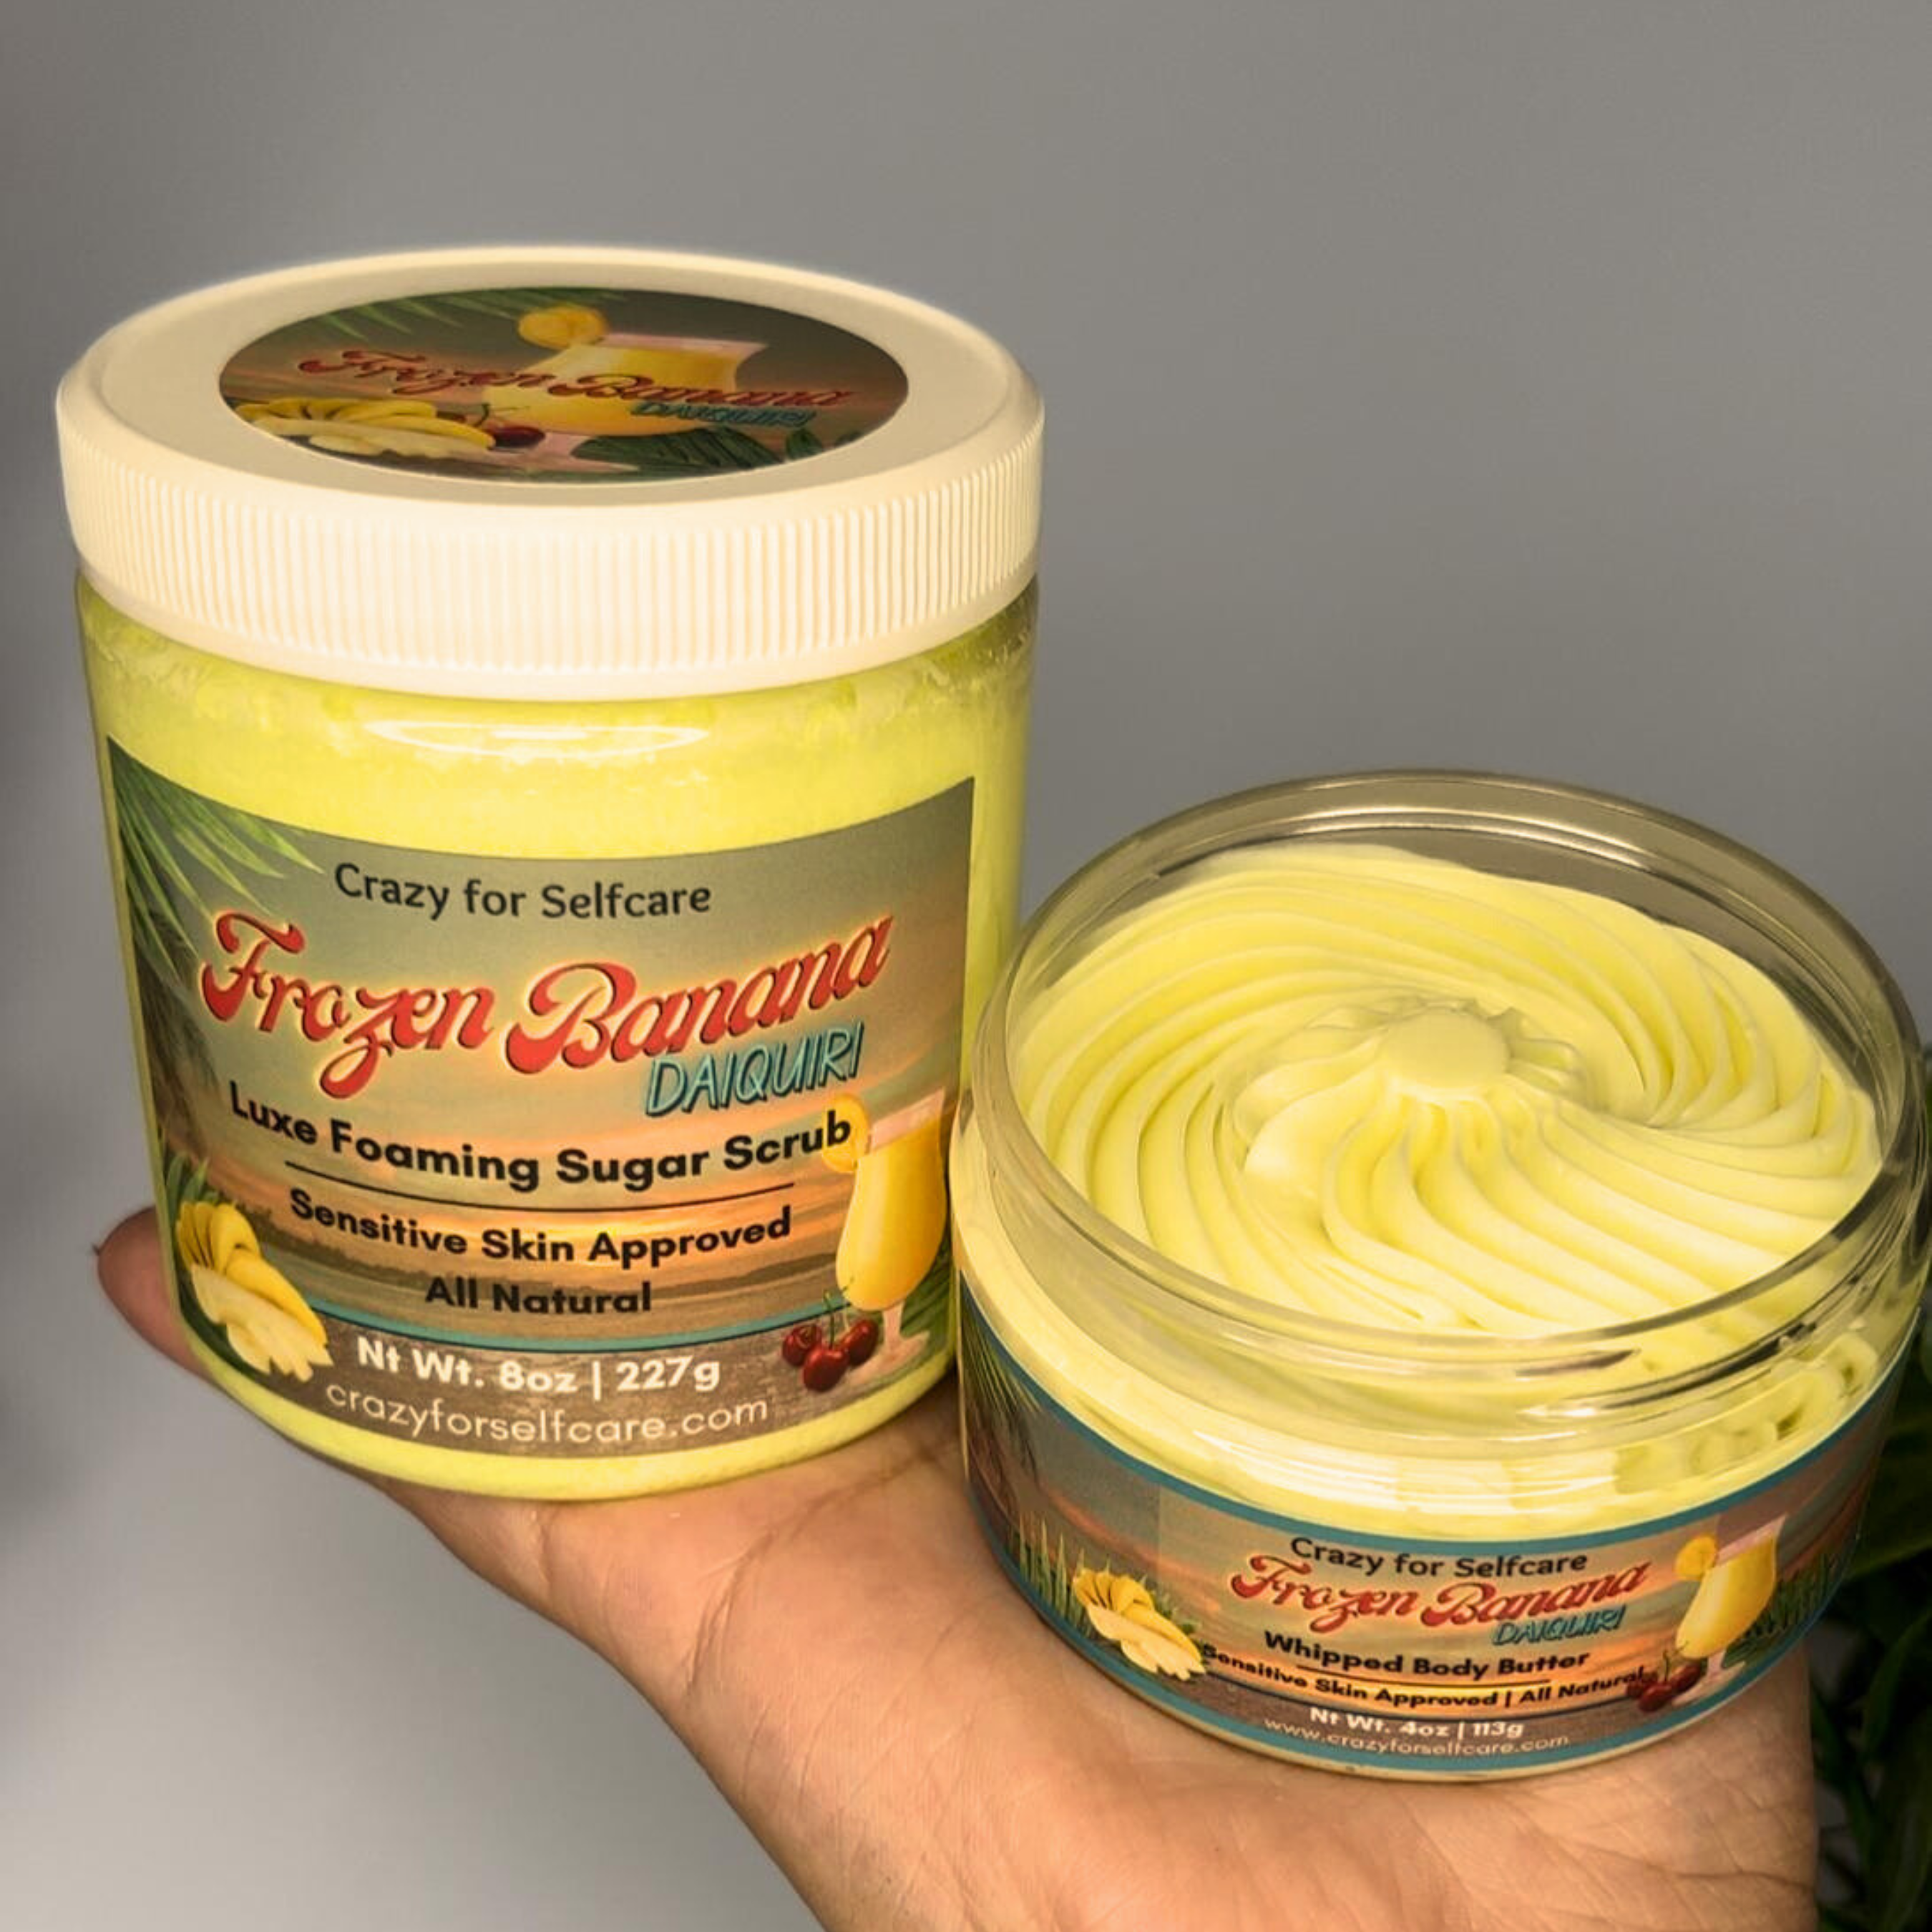 Frozen Banana Daiquiri Set | Luxe Foaming Sugar Scrub & Body Butter